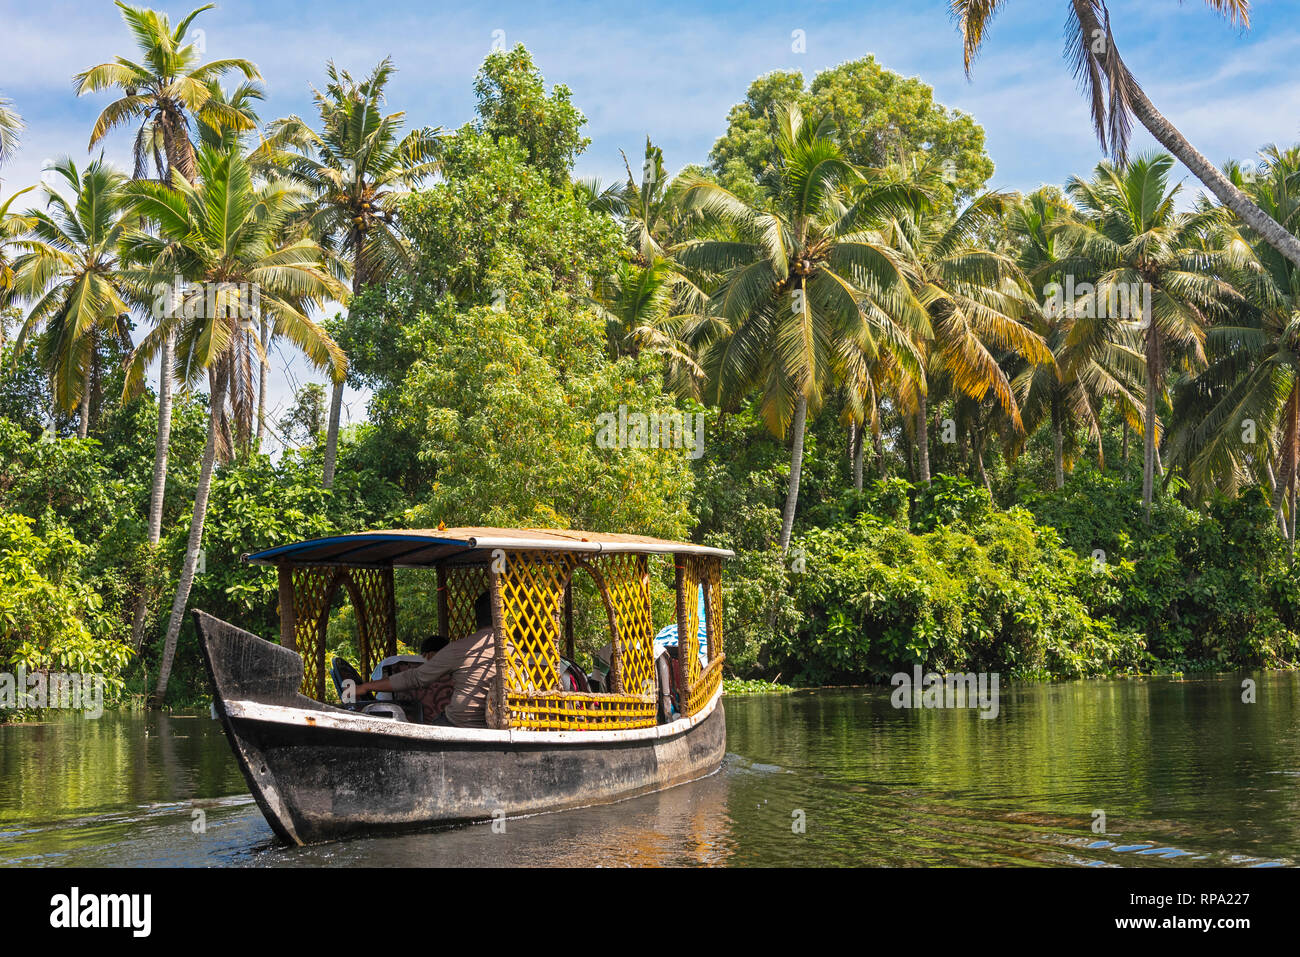 Une journée typique de croisière bateau flottant sur l'eau dormante Keralan lors d'une journée ensoleillée avec ciel bleu et de palmiers. Banque D'Images